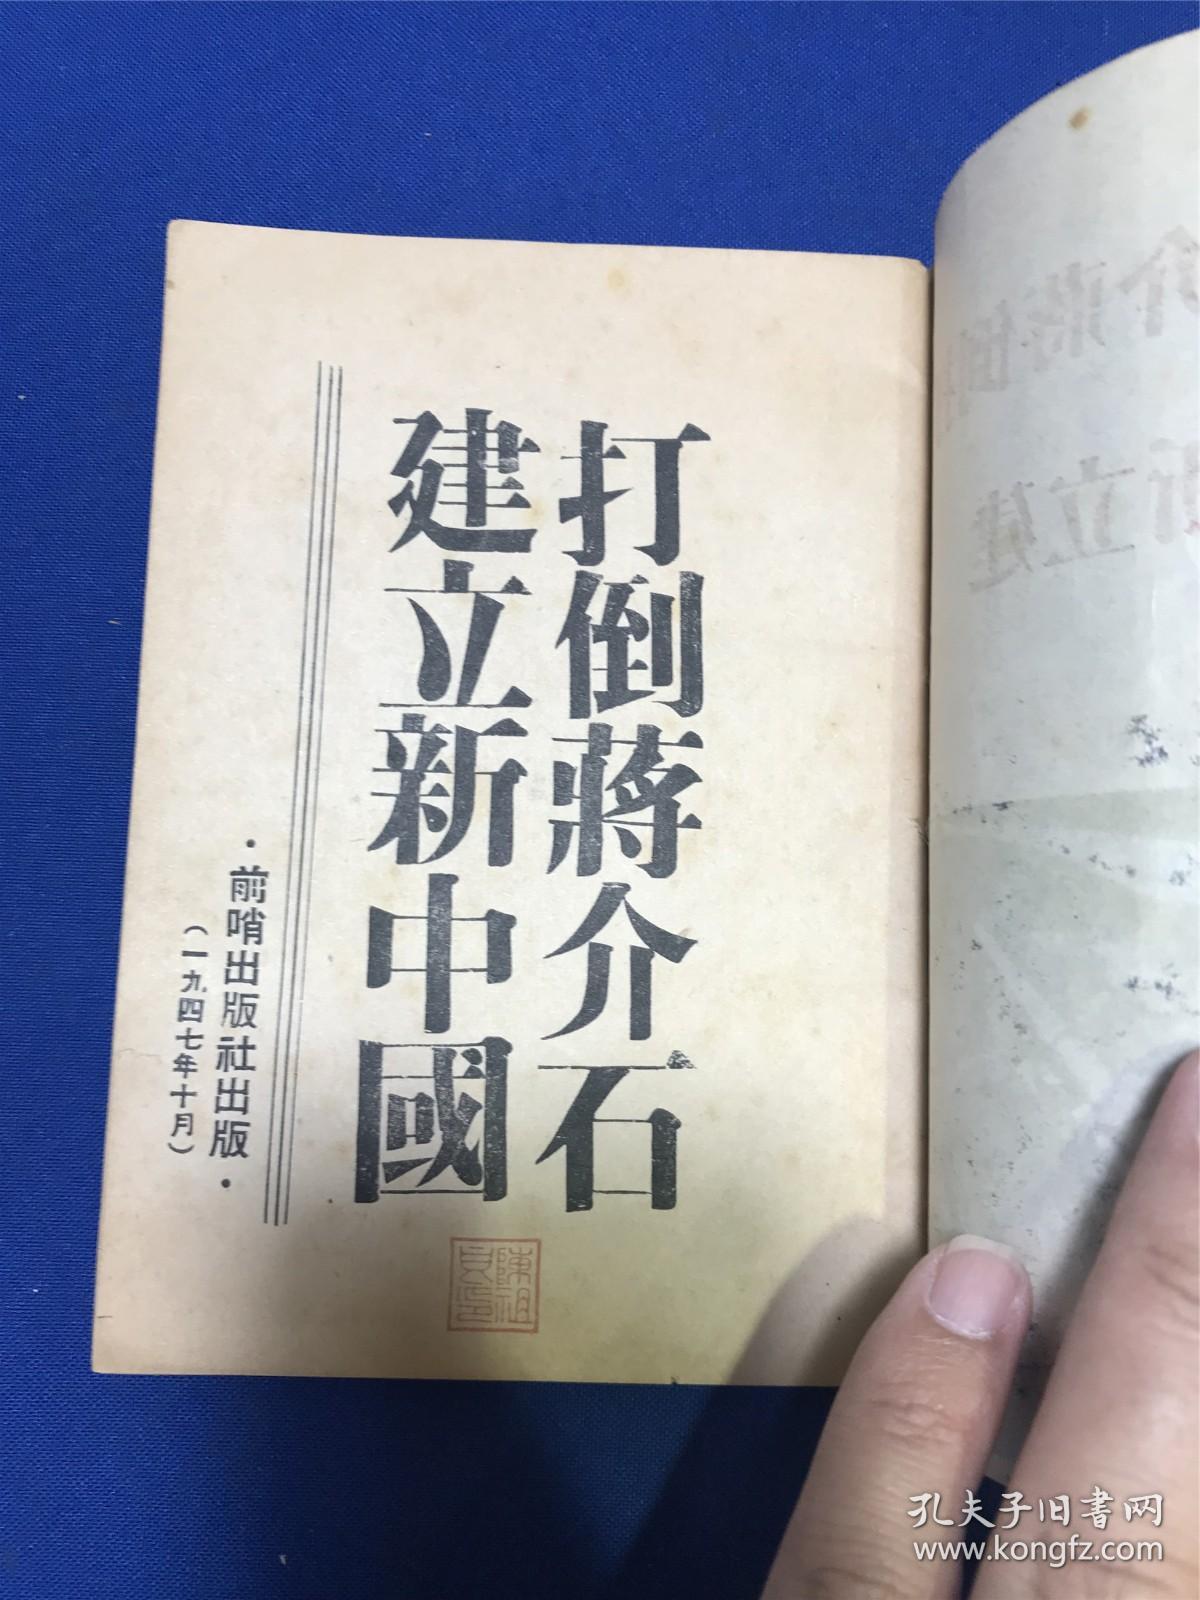 一九四七年七月前哨出版社出版《打倒蒋介石建立新中国》一册全，最早版本